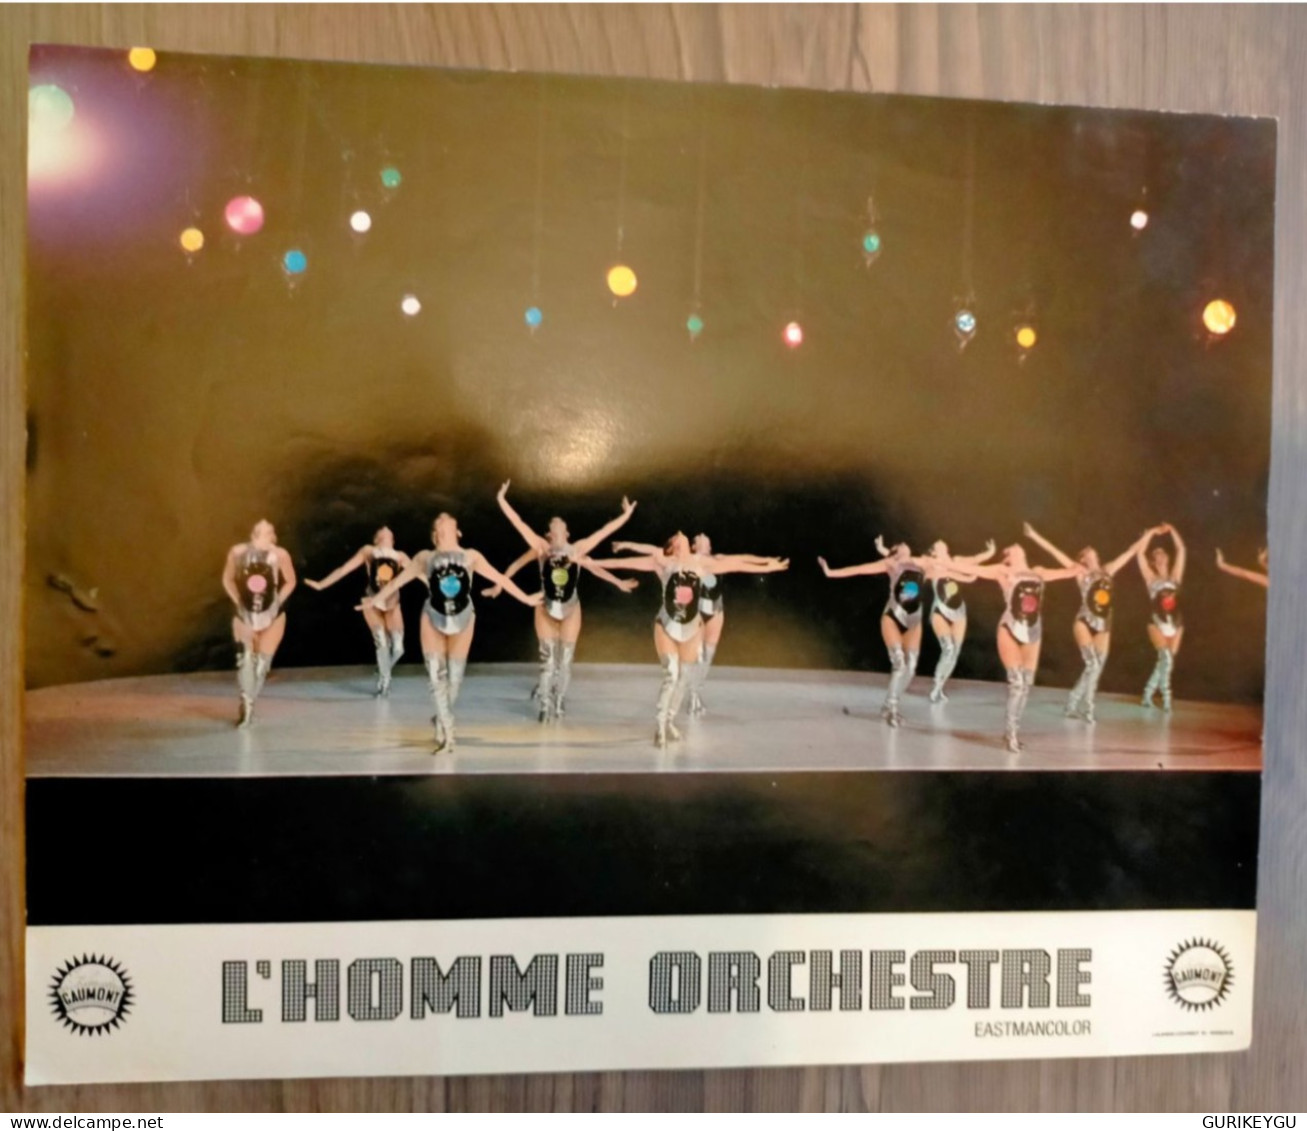 LOUIS DE FUNES Photo Film D'exploitation L'homme Orchestre 28X22cm GAUMONT Eastmancolor - Autres Formats